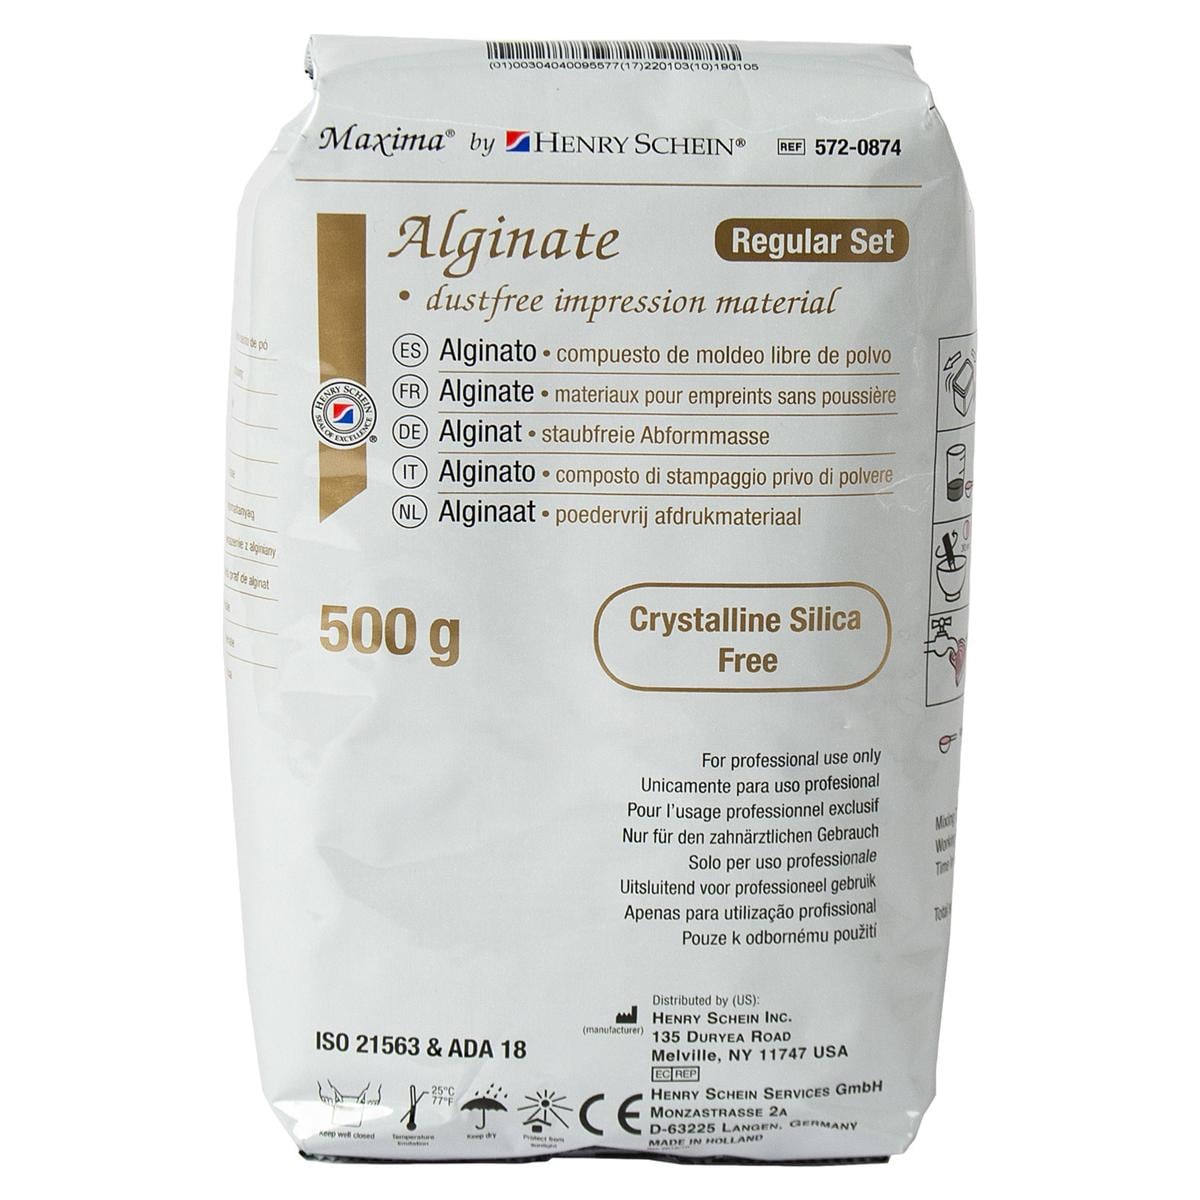 HS-Maxima® Alginat, Alginate Plus - Beutel 2 x 500 g, Messbesteck und Leerdose